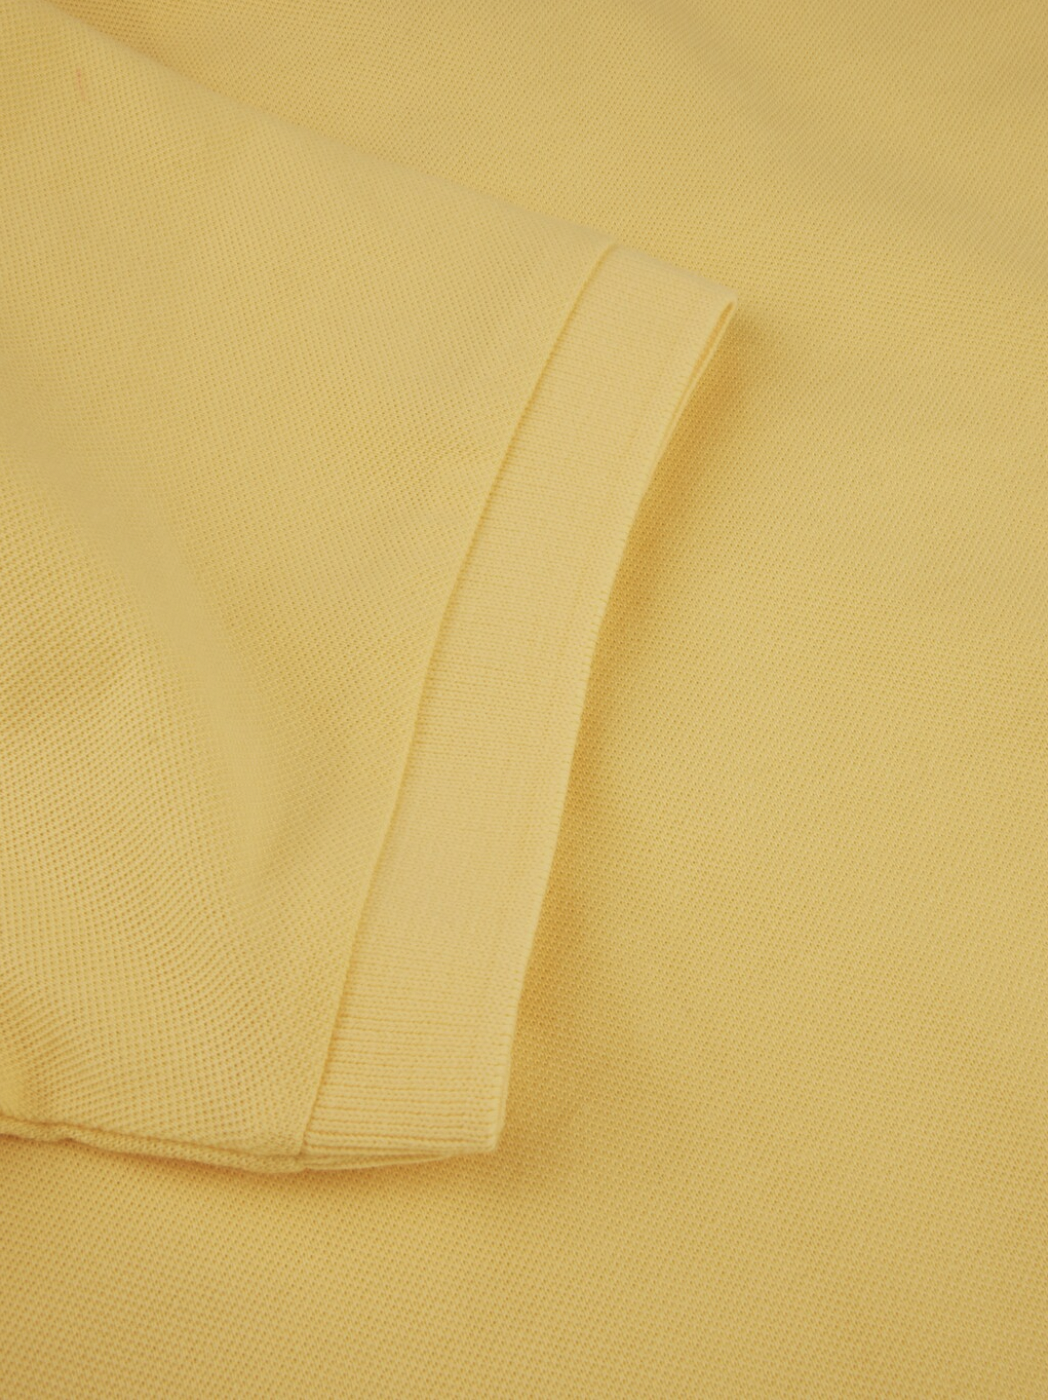 Polo Shirt Cotton Pique